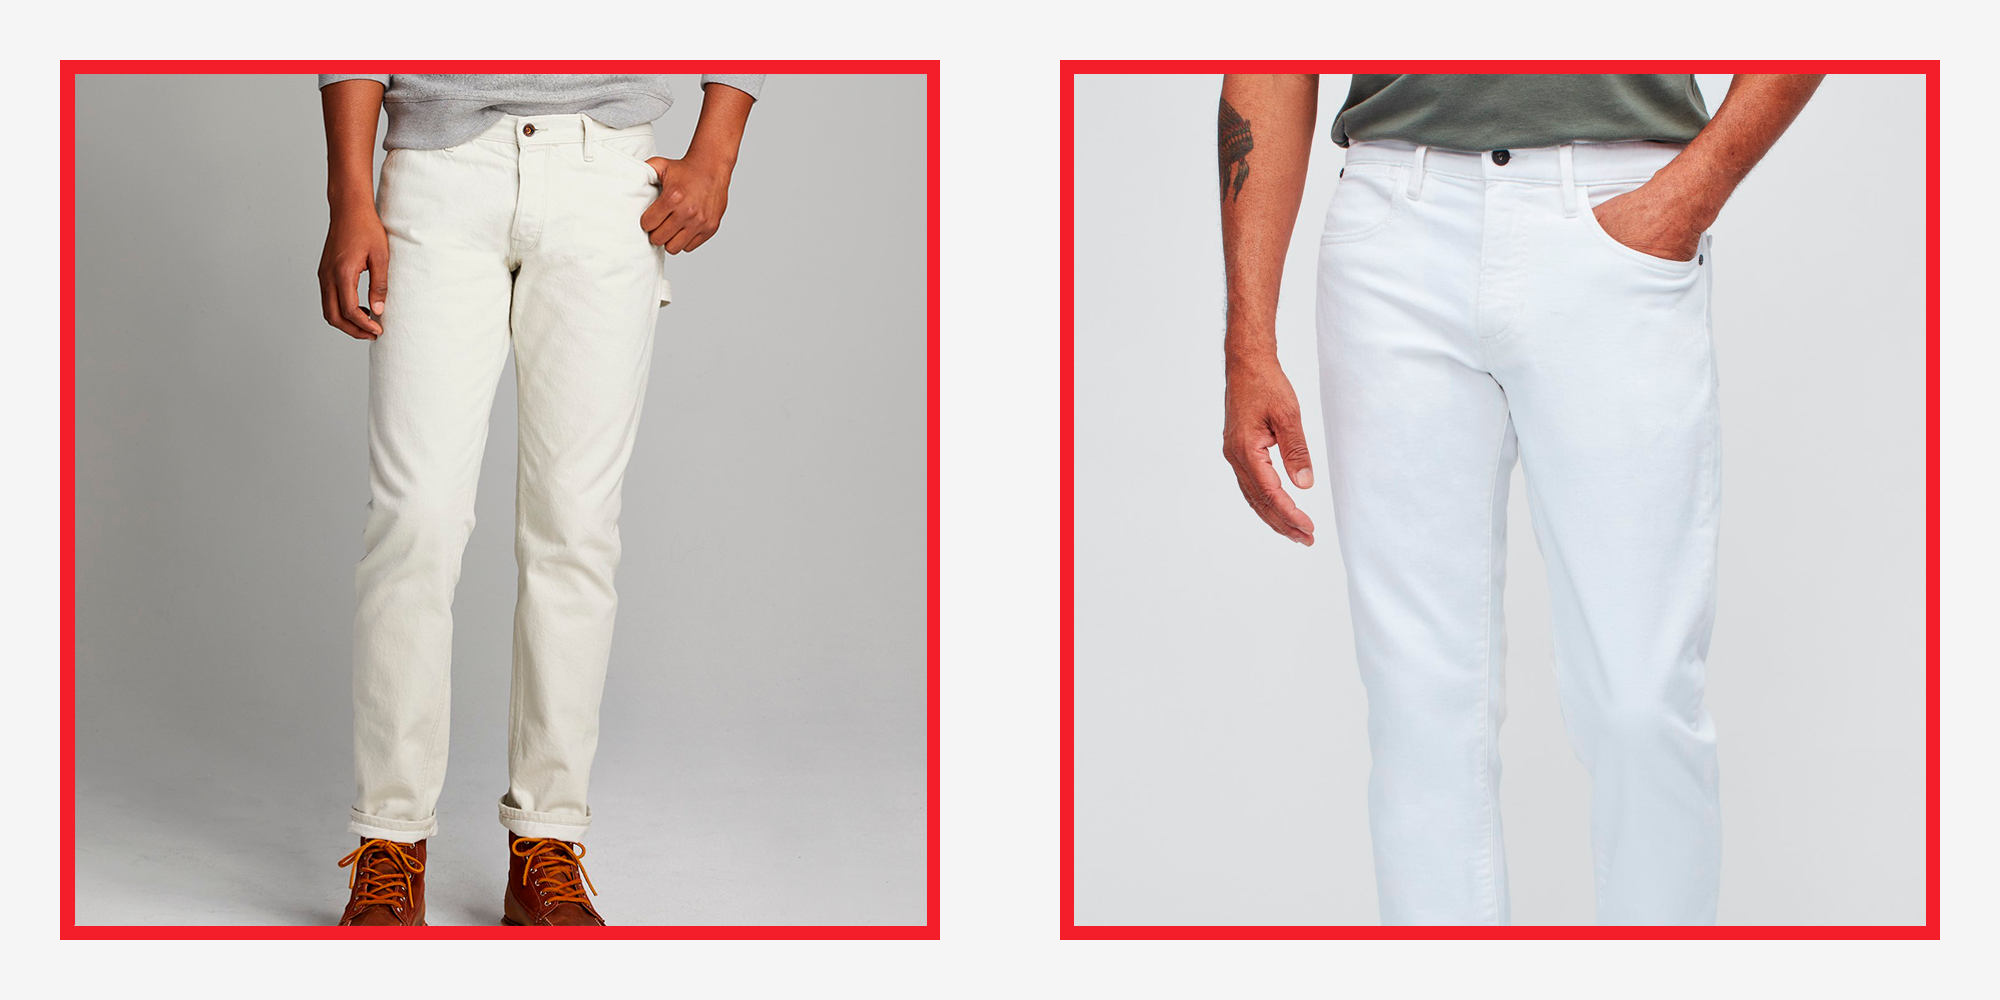 Men's White Jeans - Skinny, Ripped, & Black Jeans for Men - Express